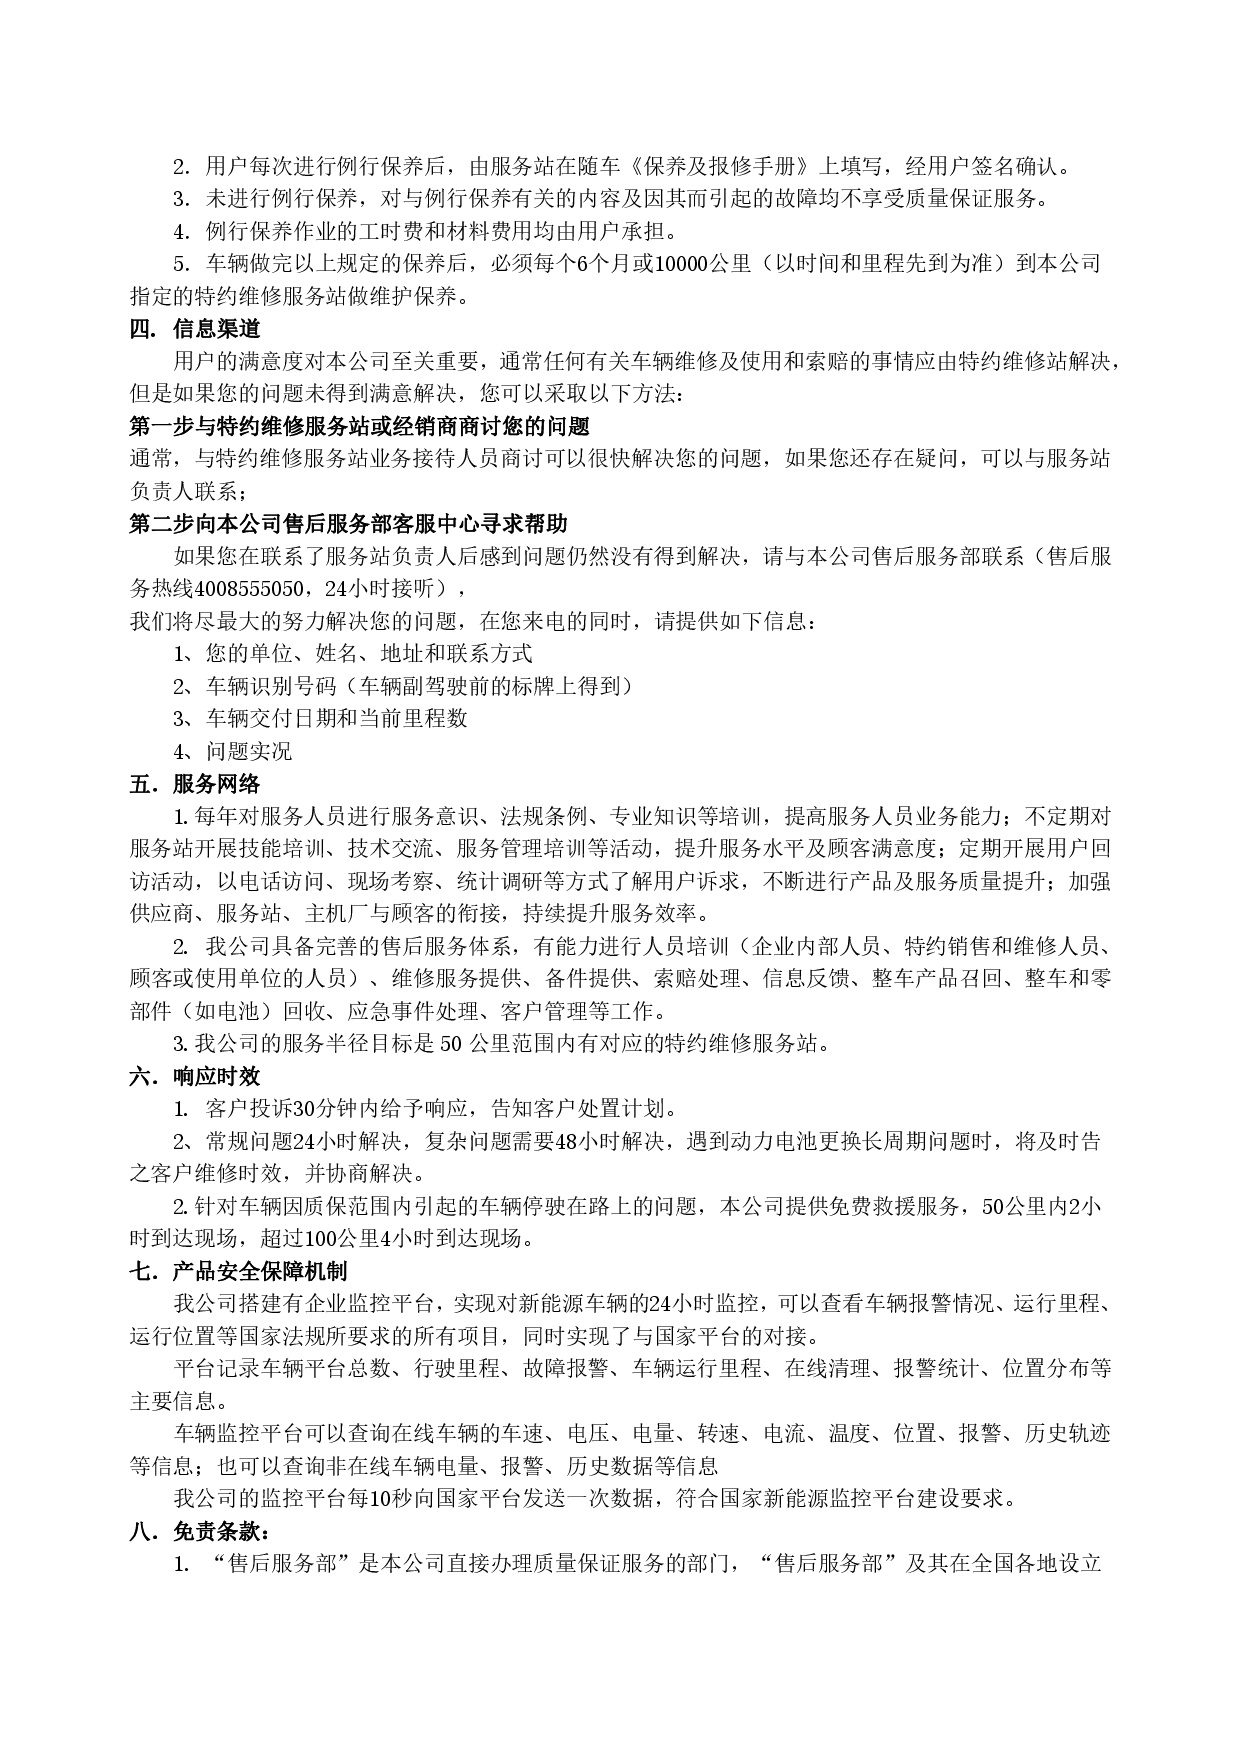 广西汽车集团新能源汽车售后服务公开承诺书（修订版）-002.jpg